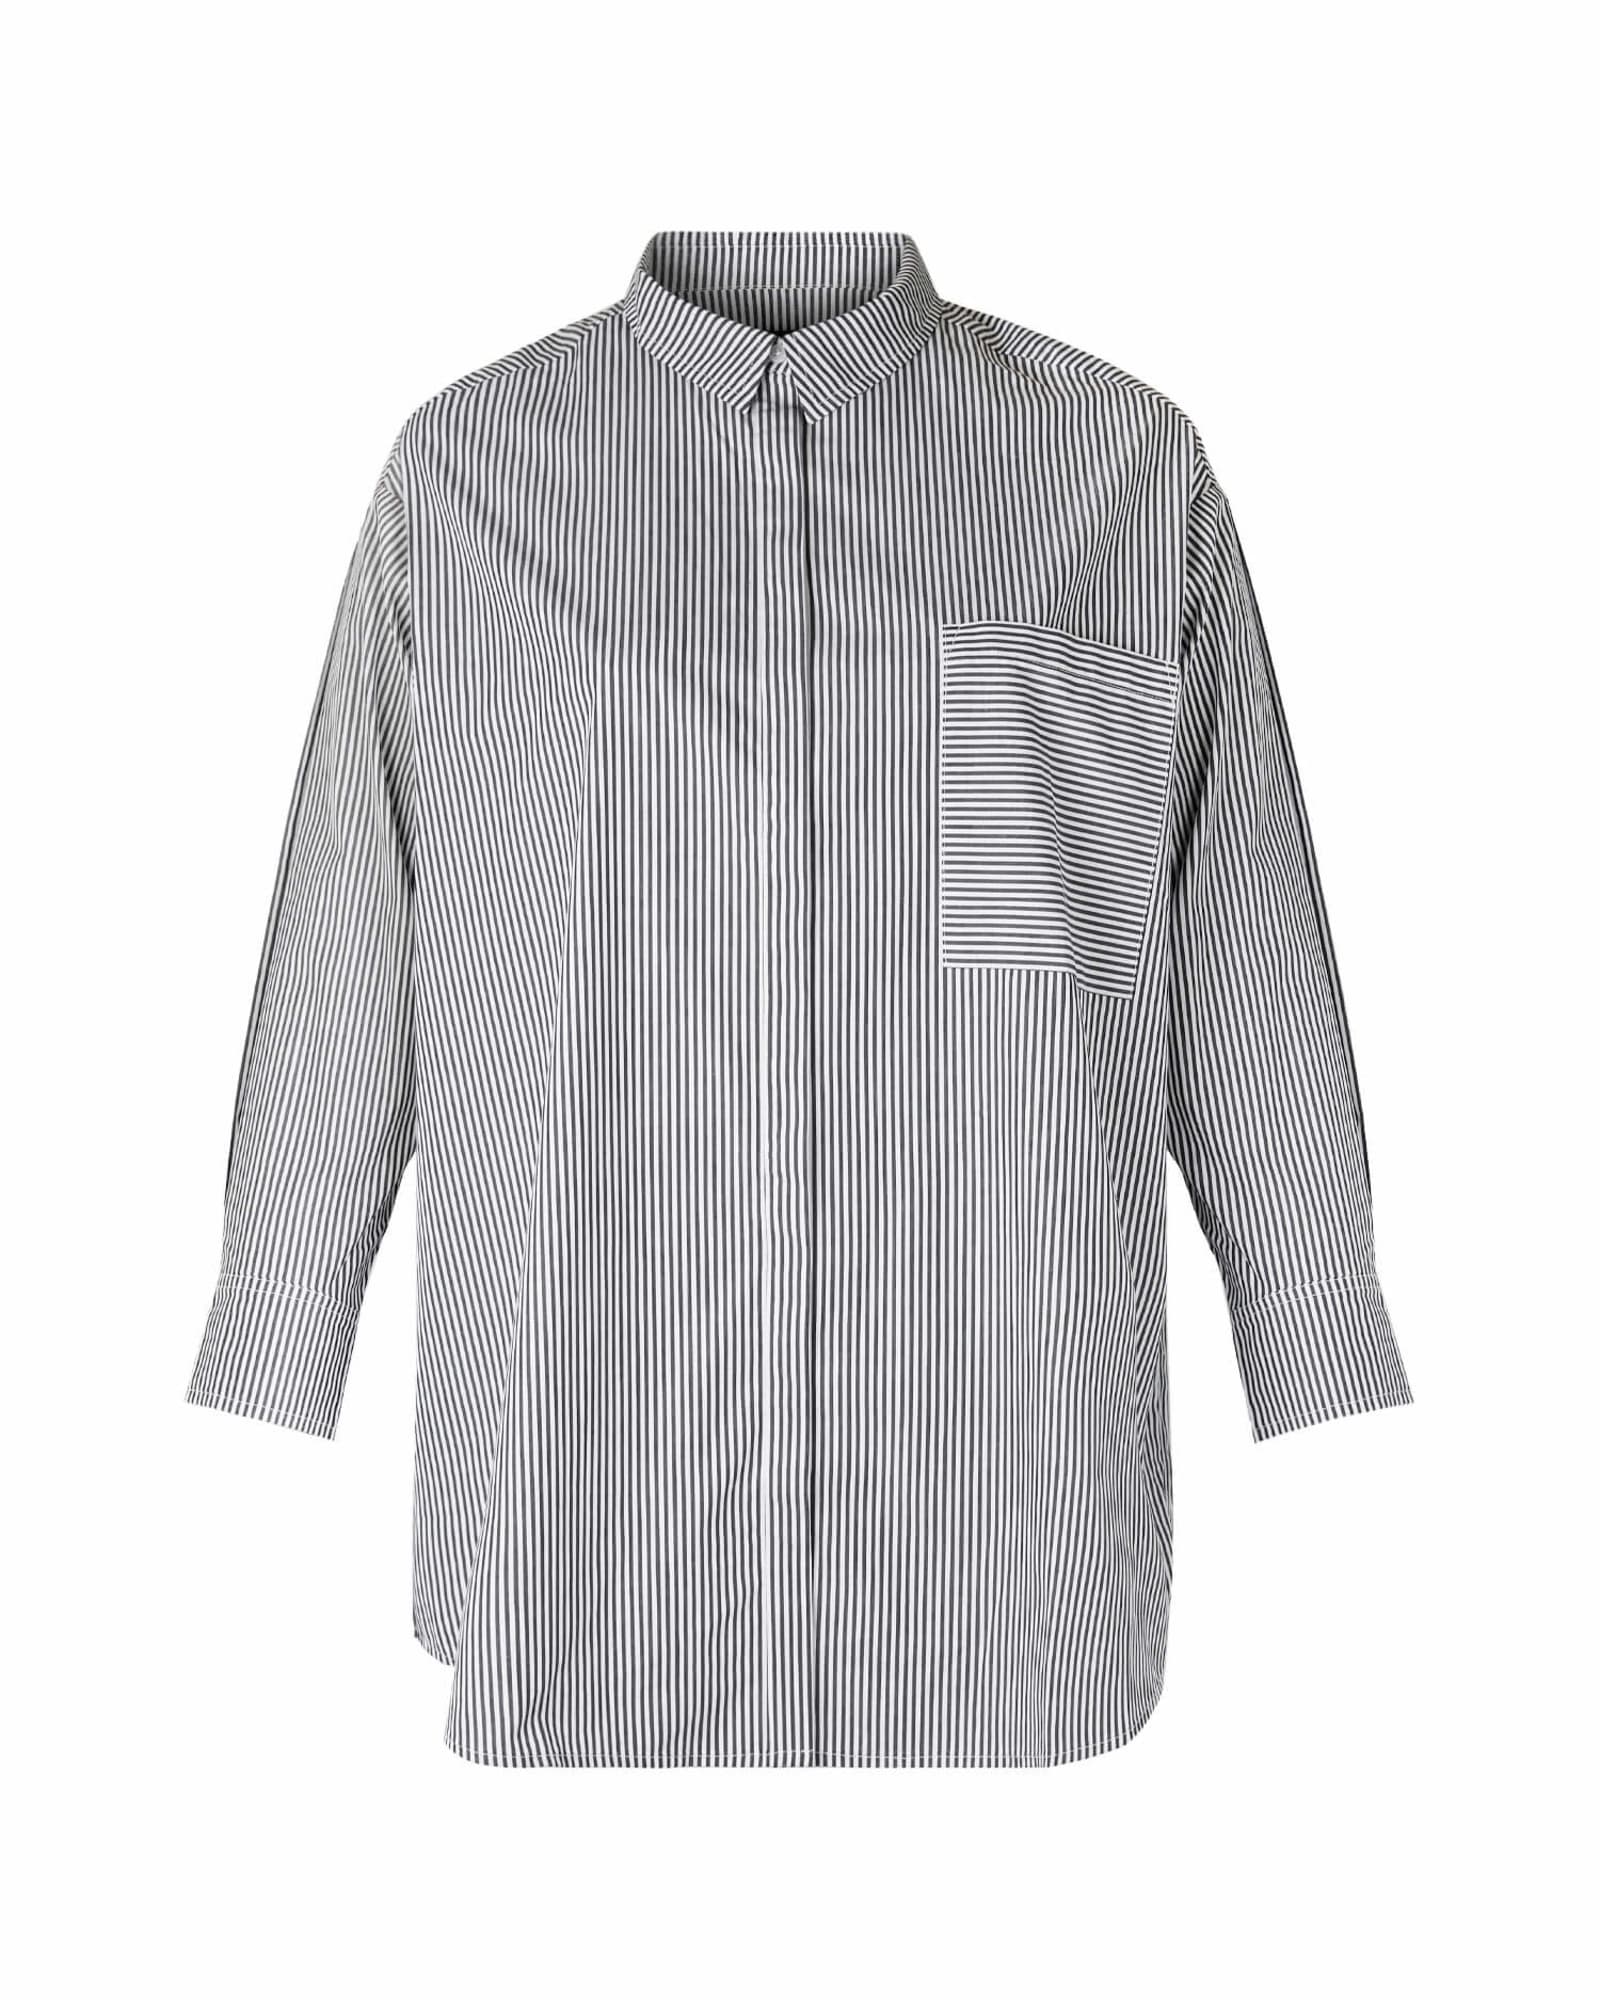 Maeve Oversized Button-Up Shirt | Black / White